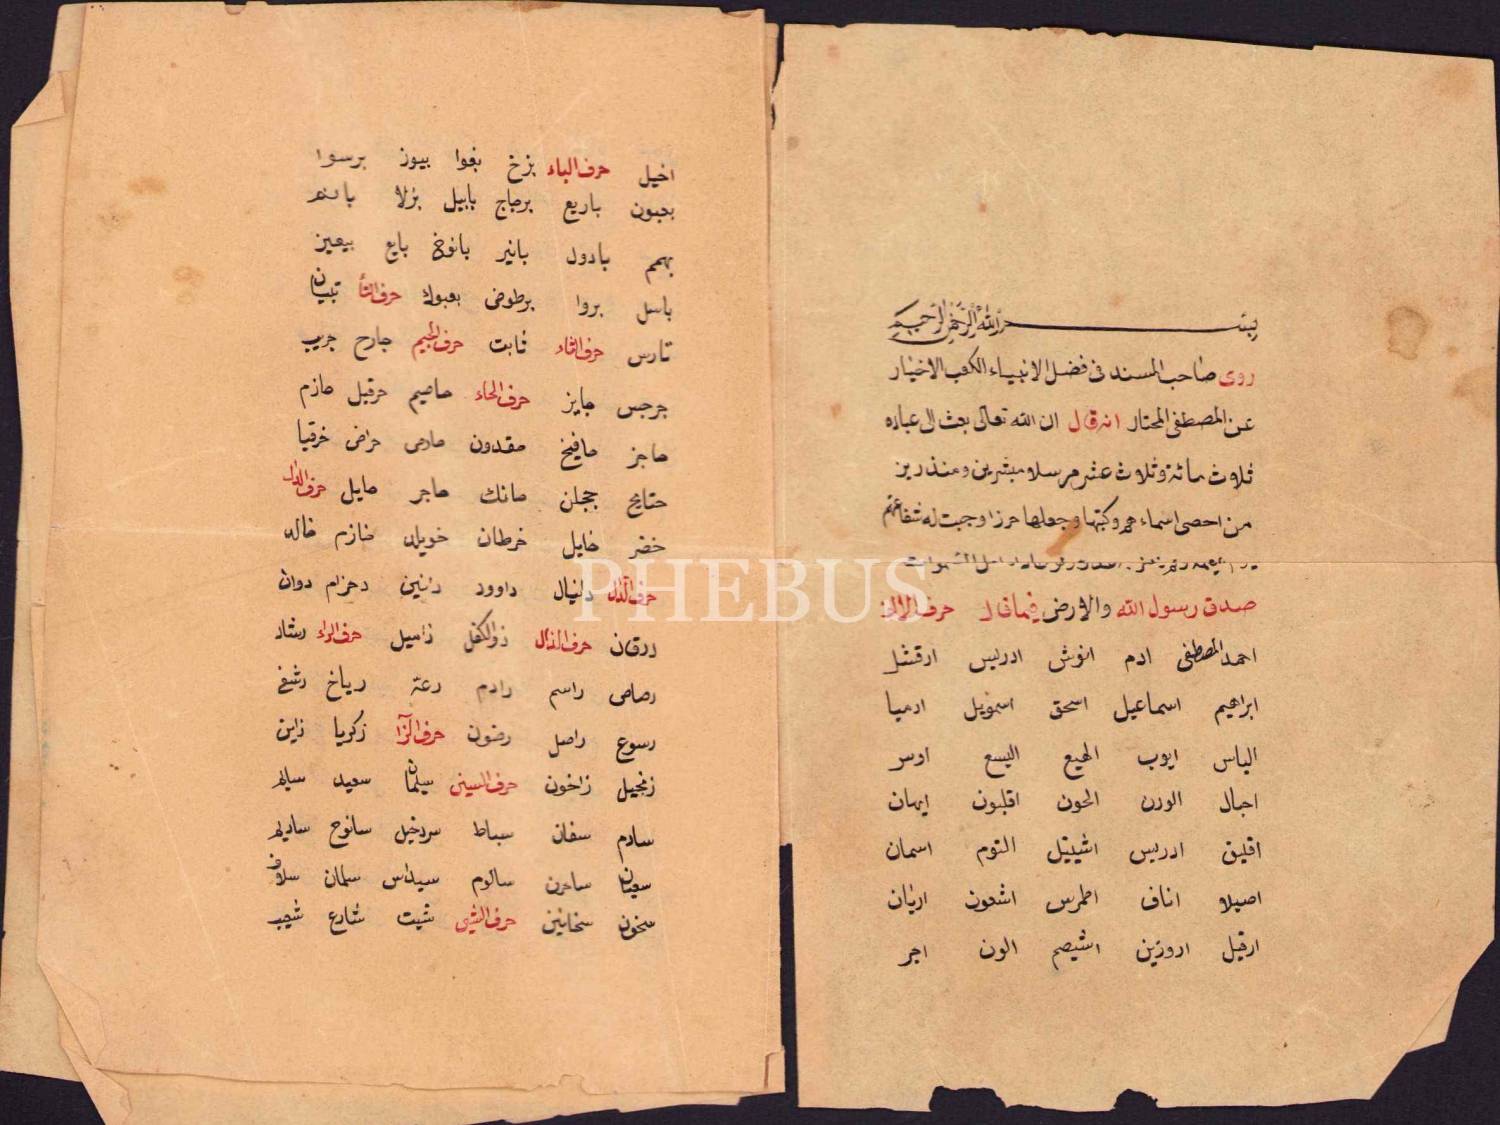 Peygamber isimleri yazılı Osmanlıca risale, 3 sayfa, 10x15 cm, haliyle